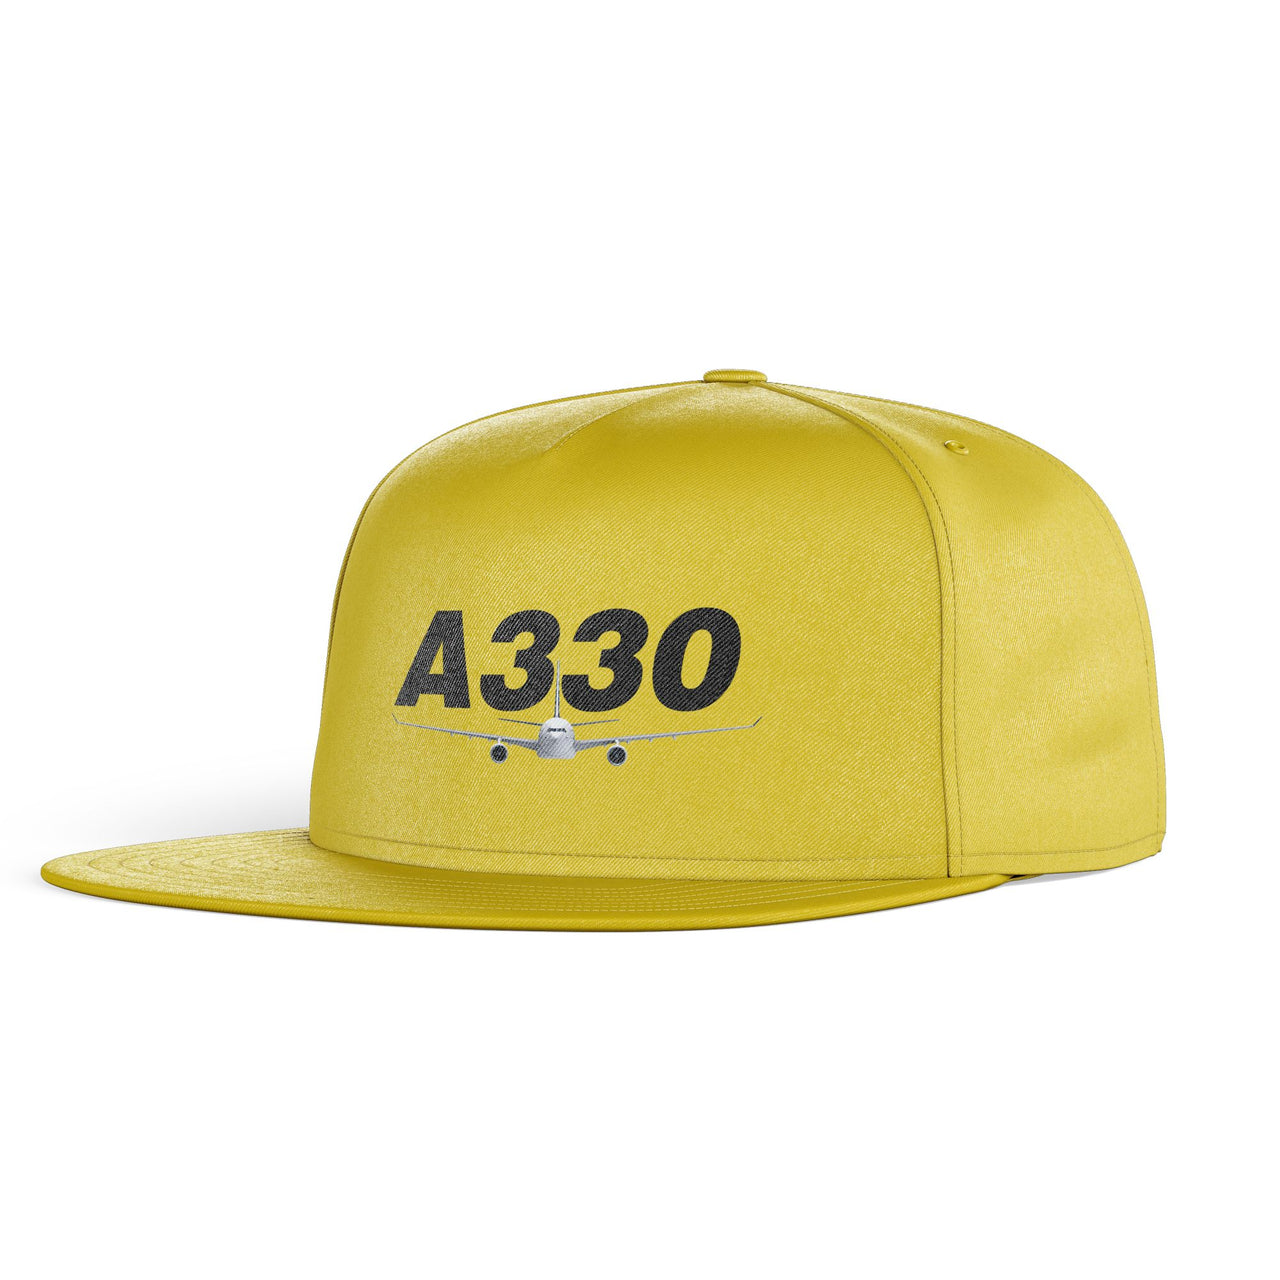 Super Airbus A330 Designed Snapback Caps & Hats